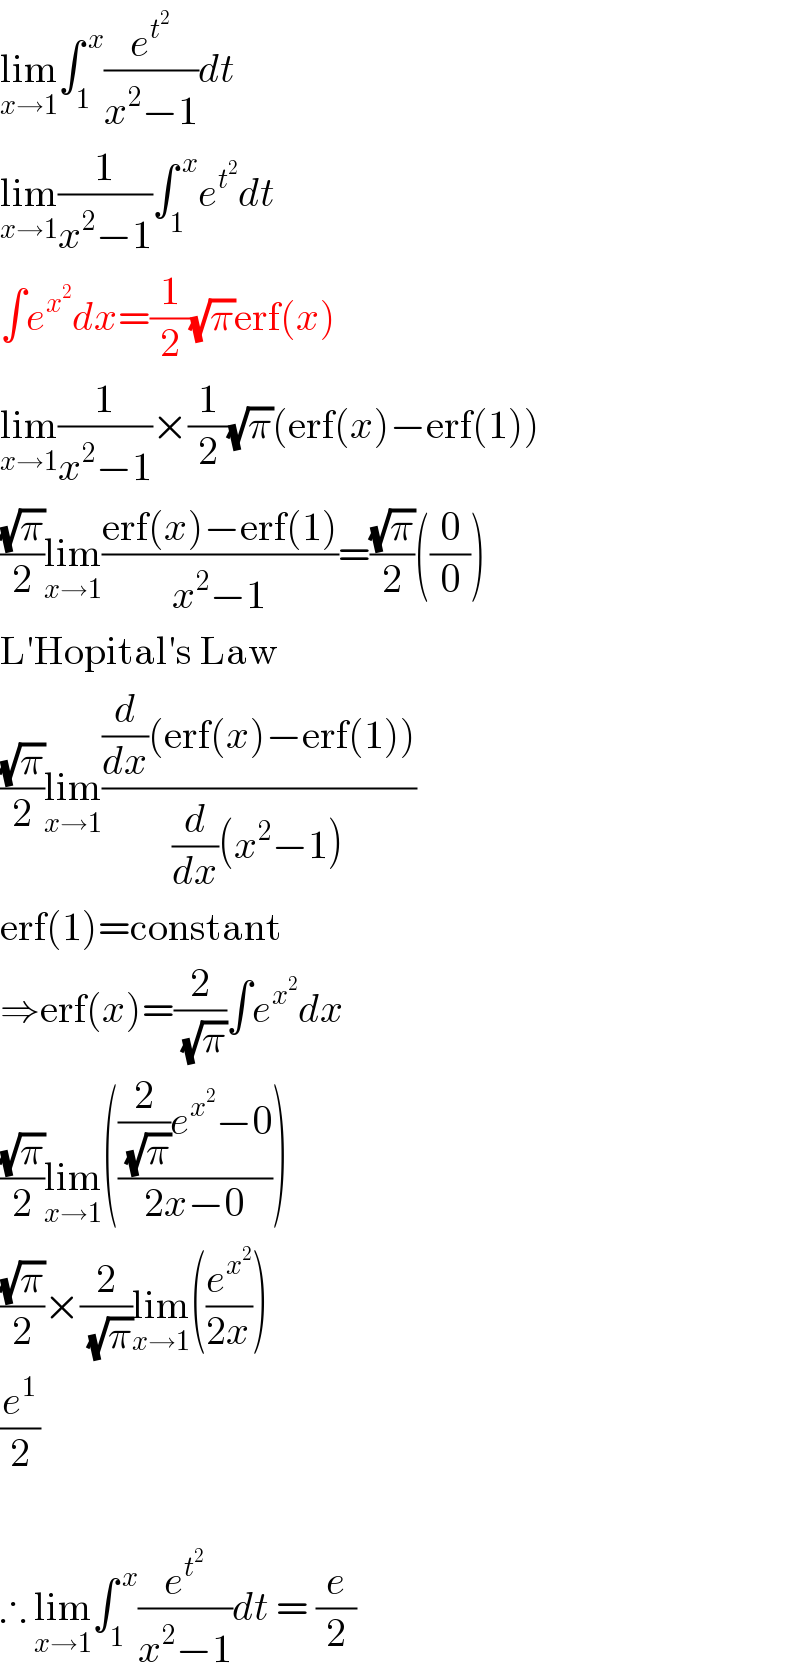 lim_(x→1) ∫_1 ^( x) (e^t^2  /(x^2 −1))dt  lim_(x→1) (1/(x^2 −1))∫_1 ^( x) e^t^2  dt  ∫e^x^2  dx=(1/2)(√π)erf(x)  lim_(x→1) (1/(x^2 −1))×(1/2)(√π)(erf(x)−erf(1))  ((√π)/2)lim_(x→1) ((erf(x)−erf(1))/(x^2 −1))=((√π)/2)((0/0))  L′Hopital′s Law  ((√π)/2)lim_(x→1) (((d/dx)(erf(x)−erf(1)))/((d/dx)(x^2 −1)))  erf(1)=constant  ⇒erf(x)=(2/(√π))∫e^x^2  dx  ((√π)/2)lim_(x→1) ((((2/(√π))e^x^2  −0)/(2x−0)))  ((√π)/2)×(2/(√π))lim_(x→1) ((e^x^2  /(2x)))  (e^1 /2)     ∴ lim_(x→1) ∫_1 ^( x) (e^t^2  /(x^2 −1))dt = (e/2)  